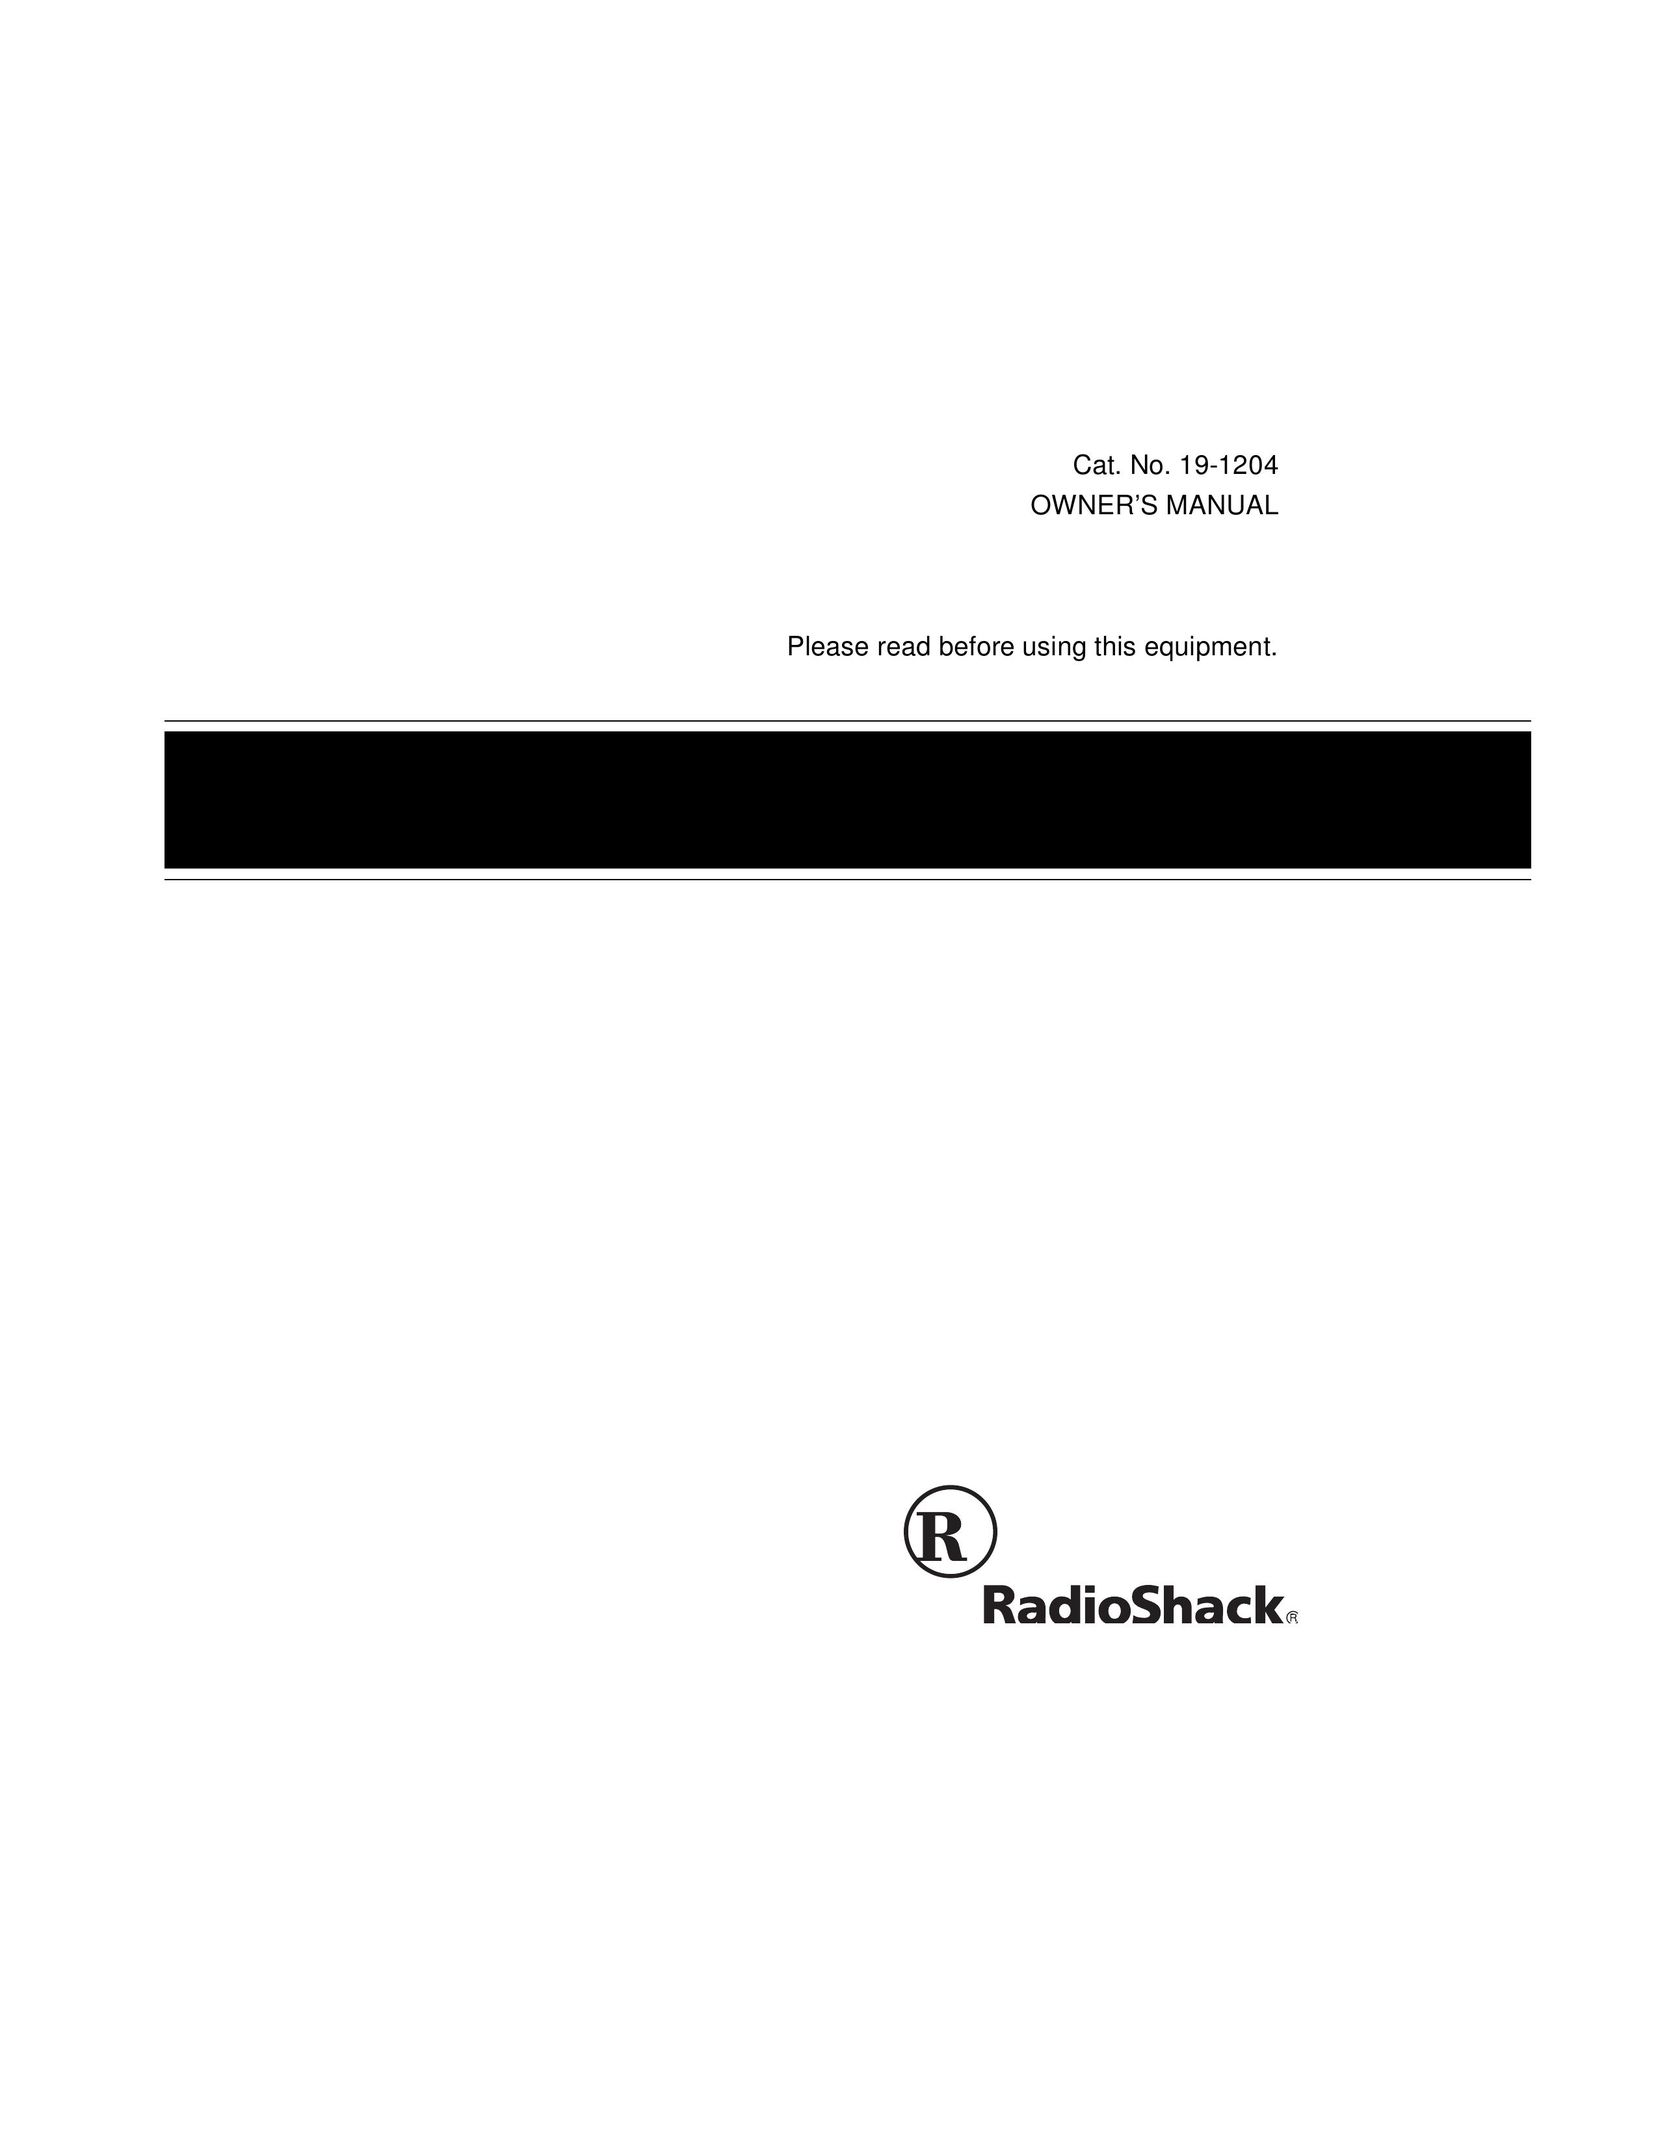 Radio Shack BTX-123 Work Light User Manual